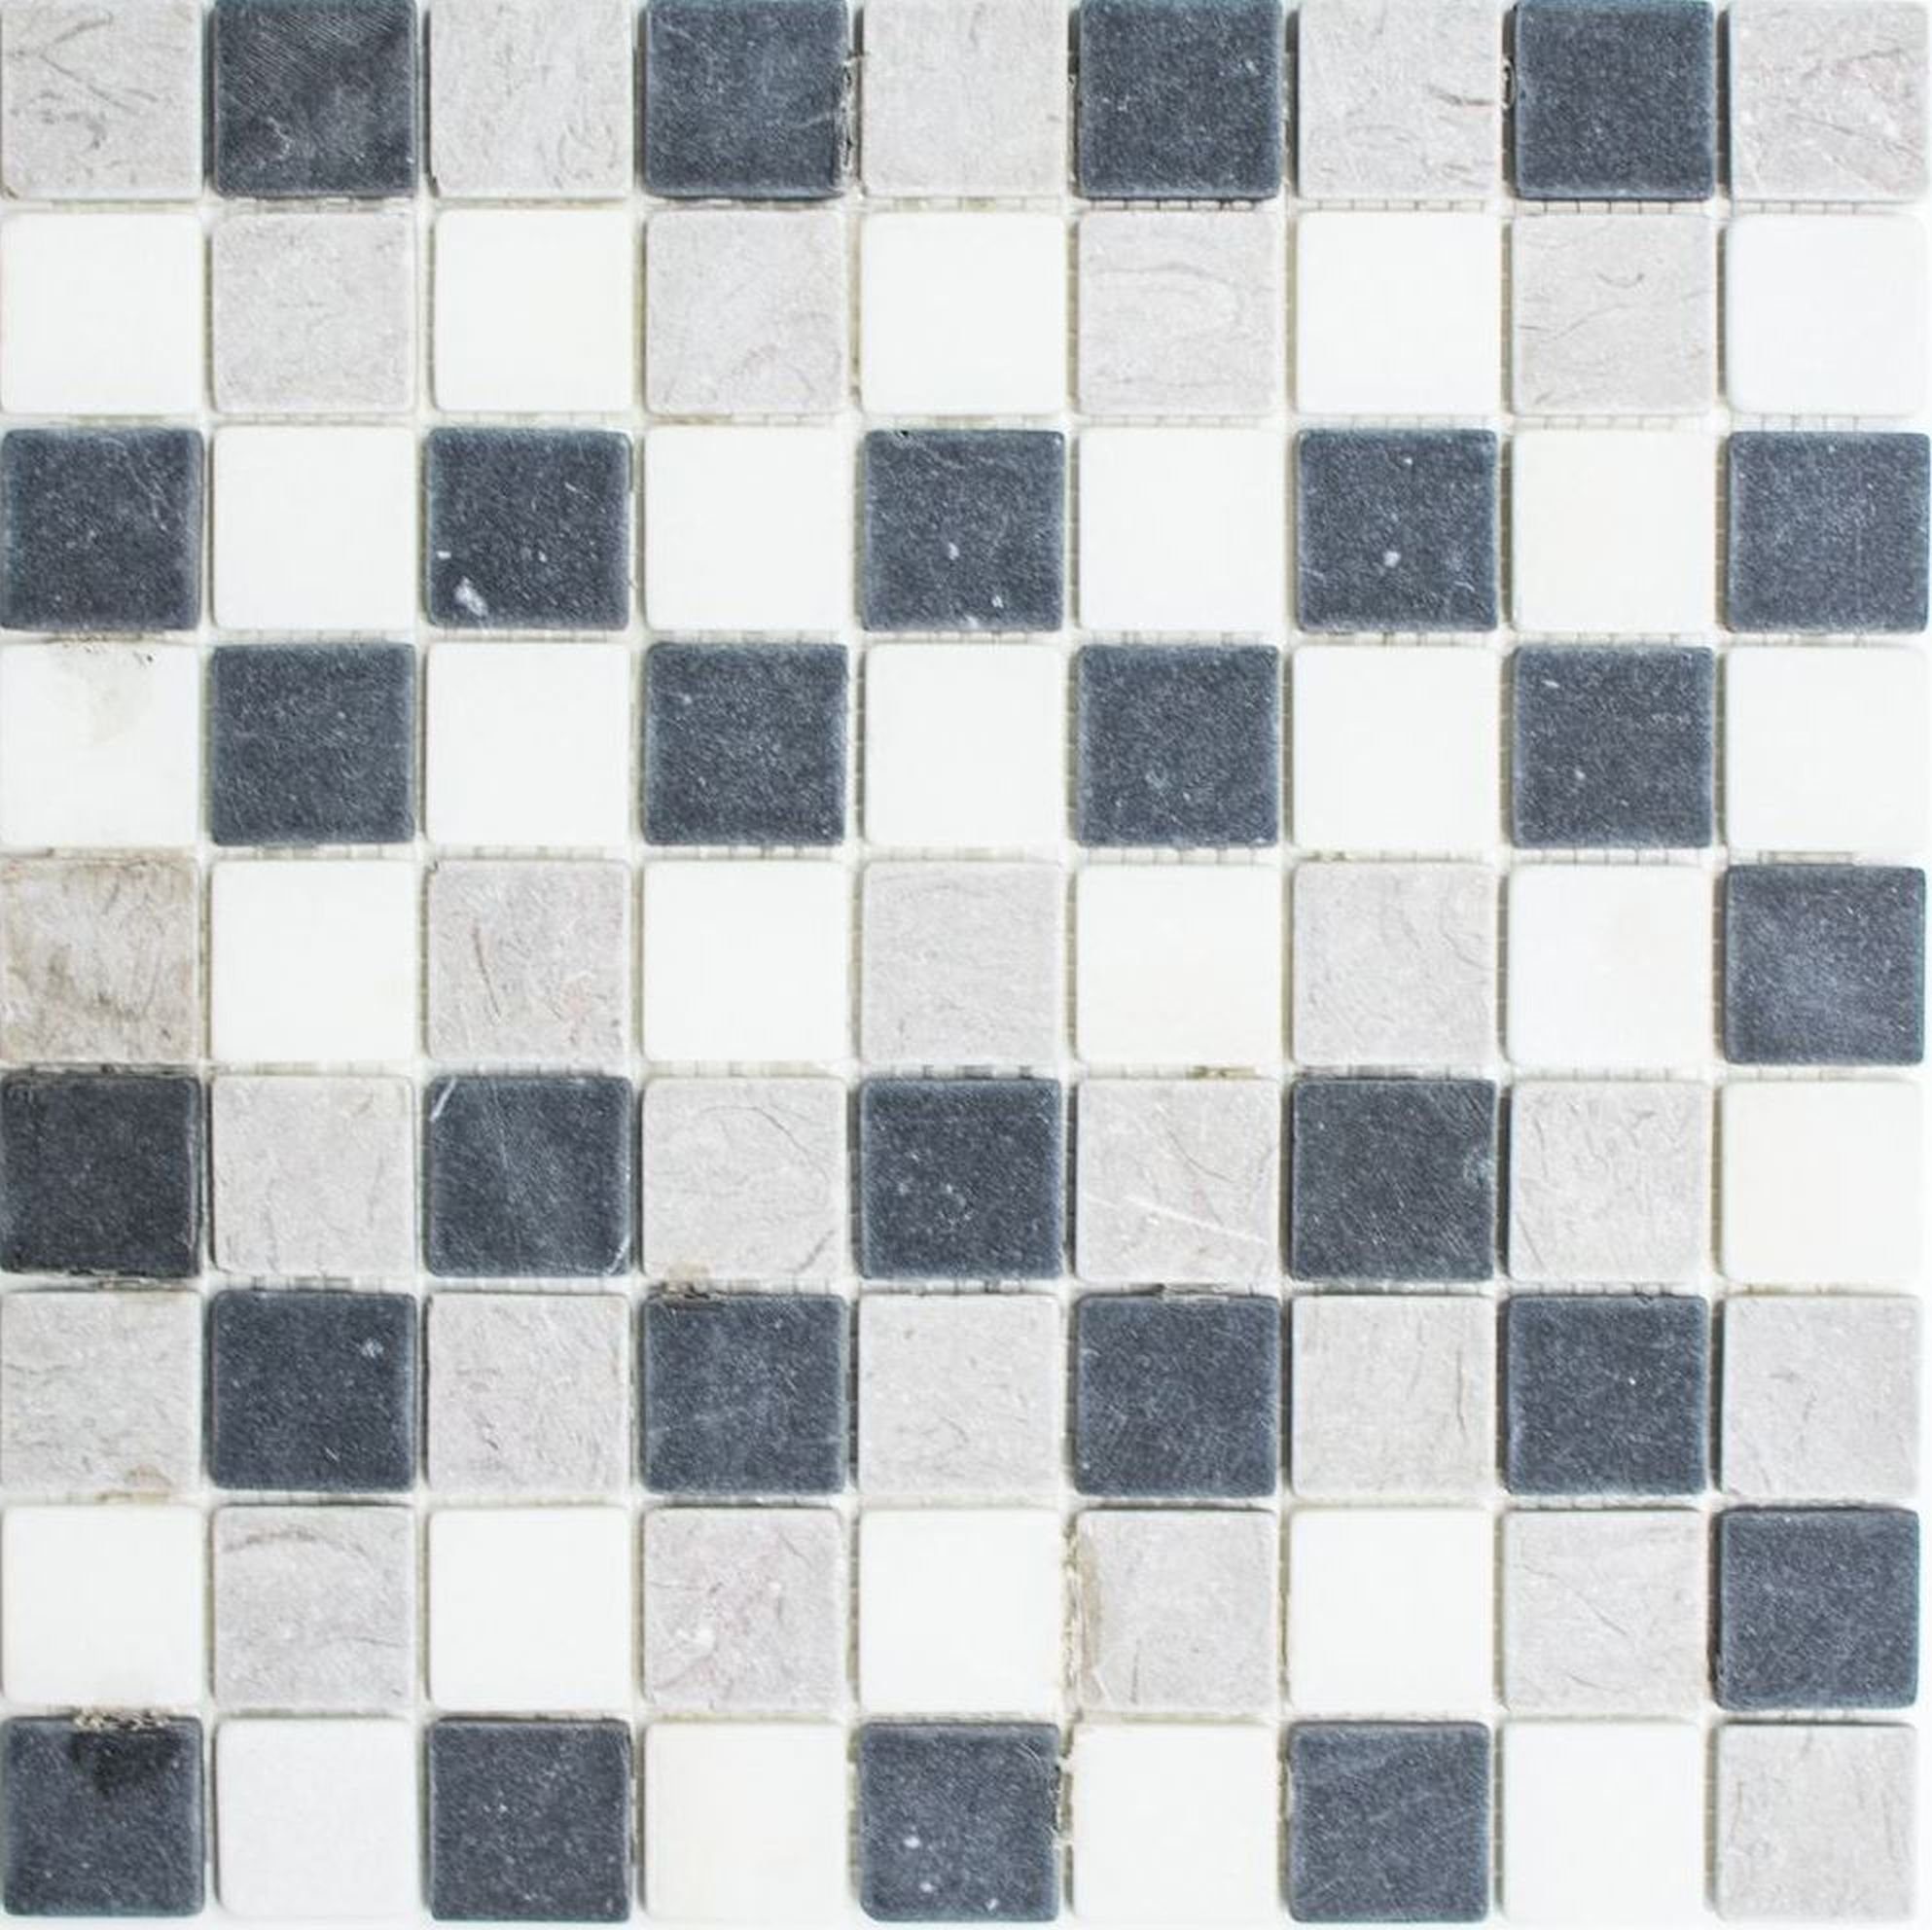 Mosani Mosaikfliesen Marmor Mosaik Fliese Naturstein beige grau schwarz Wand